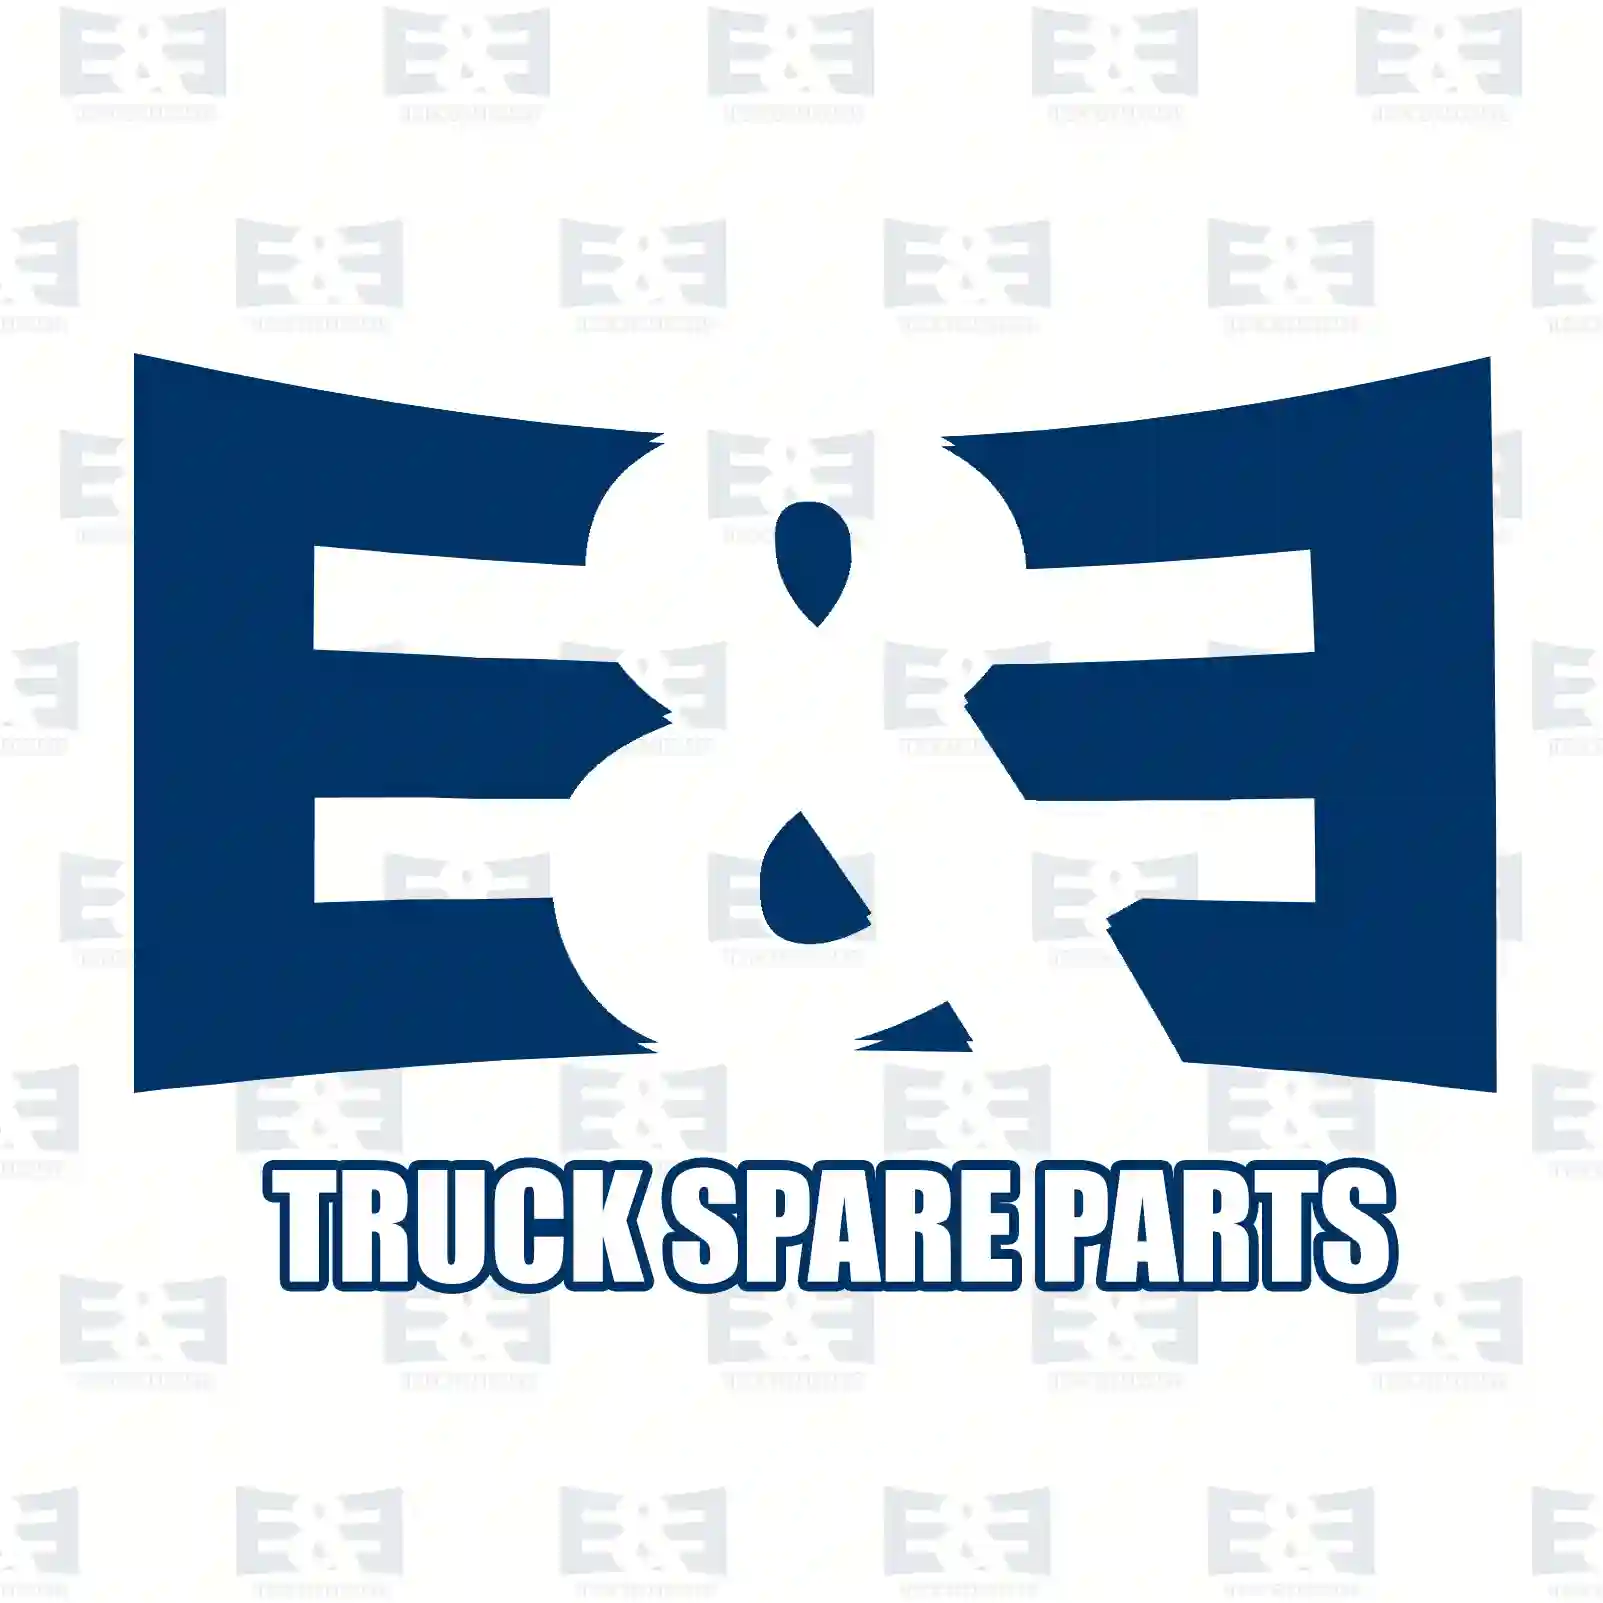 Cover, compressor, 2E2293209, 1427426, ZG50376-0008 ||  2E2293209 E&E Truck Spare Parts | Truck Spare Parts, Auotomotive Spare Parts Cover, compressor, 2E2293209, 1427426, ZG50376-0008 ||  2E2293209 E&E Truck Spare Parts | Truck Spare Parts, Auotomotive Spare Parts